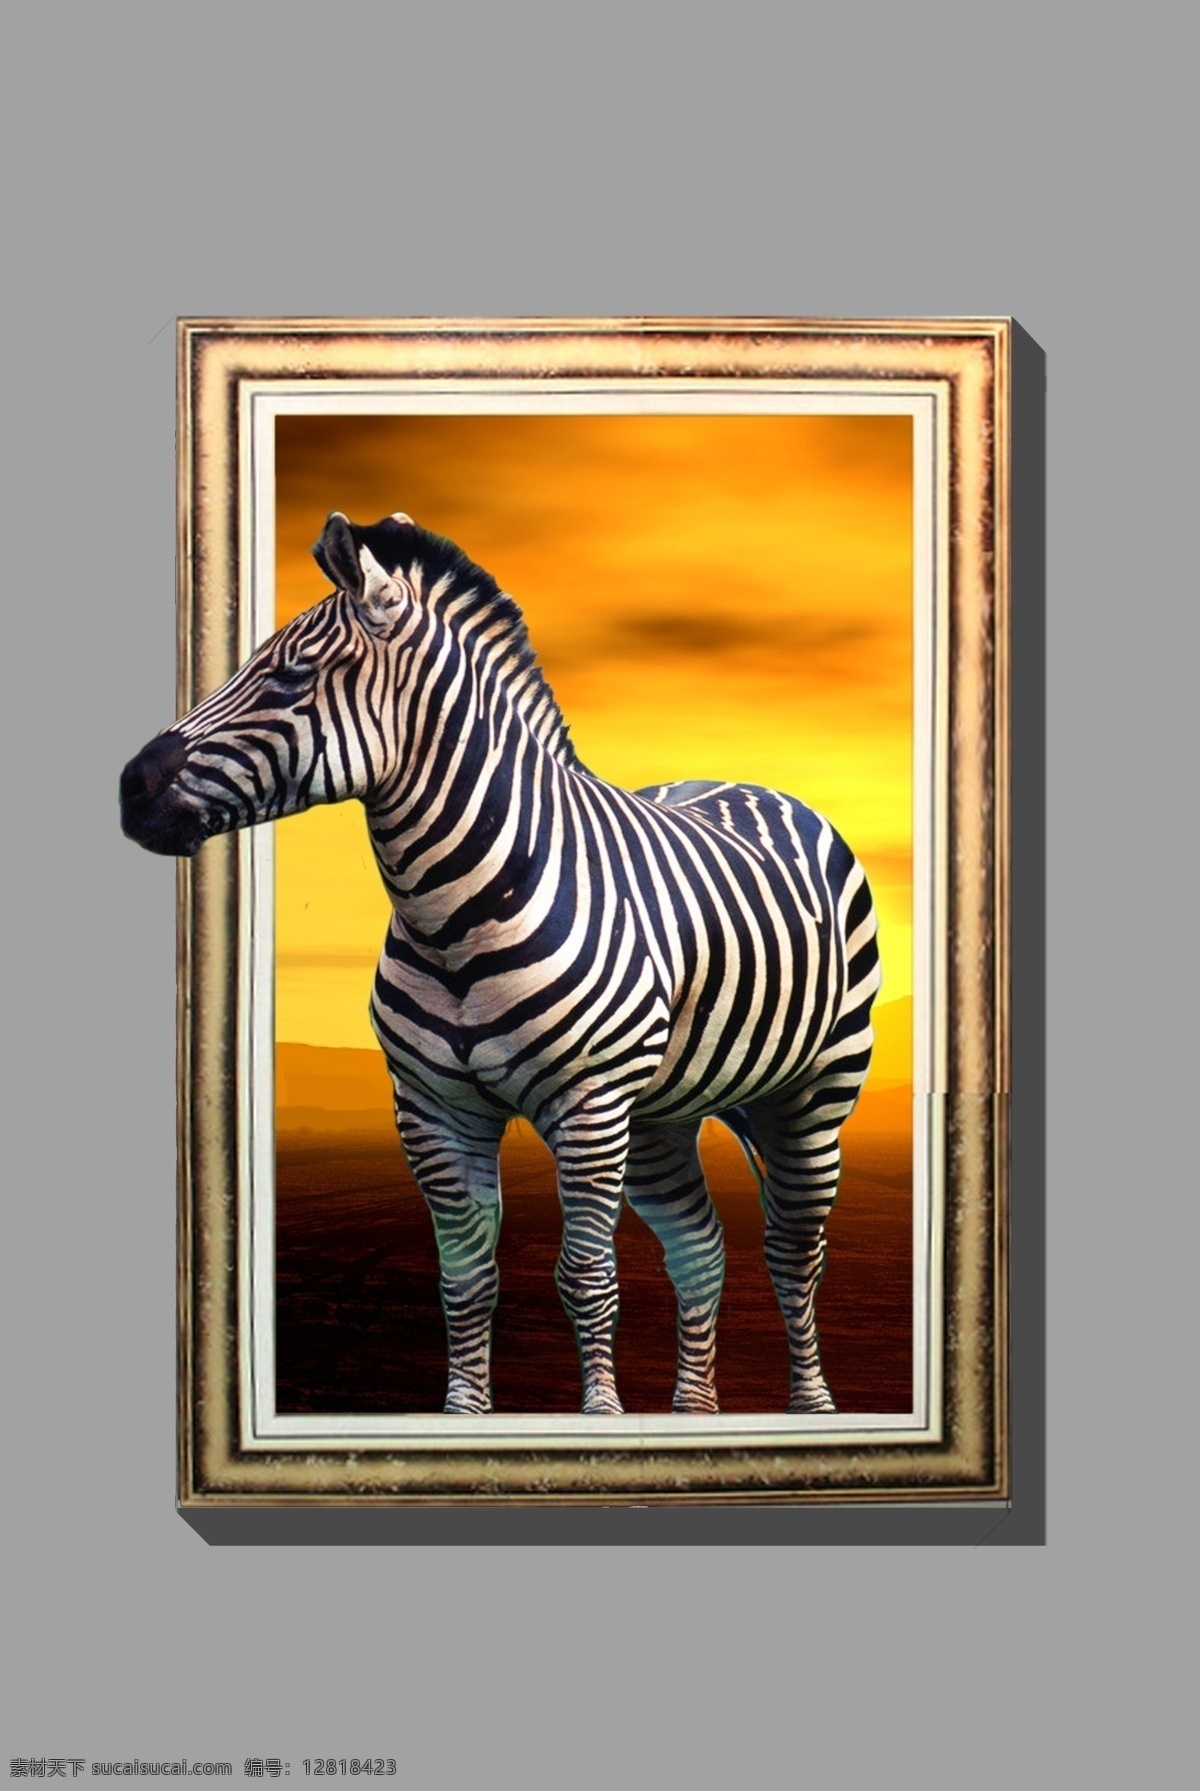 斑马 动物世界 动物 壁画 彩绘 3d 立体 画 设计素材 模板下载 3d立体画 地面立体 抽象画 3d设计 逼真 趣味 墙画 室内画 视觉画 三维立体画 美术绘画 文化艺术 3d立体墙画 分层 源文件